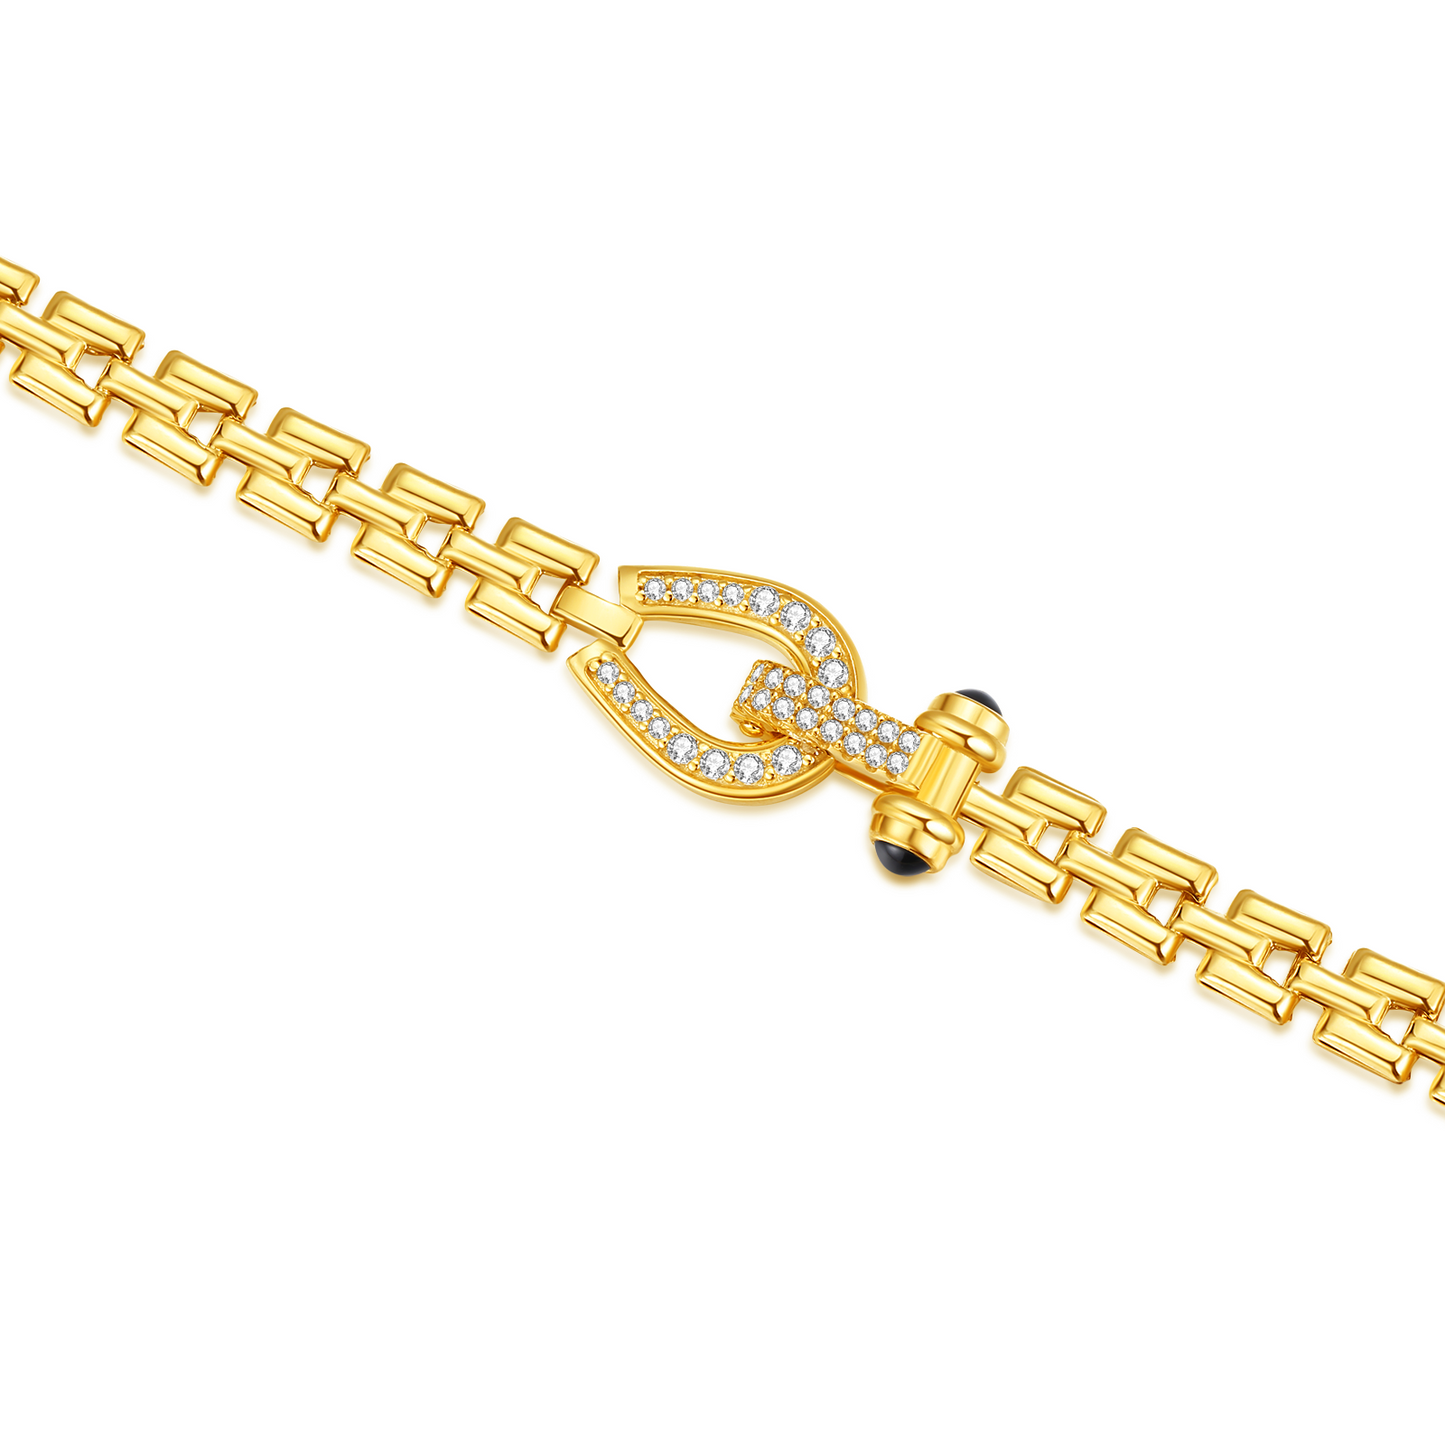 Horseshoe Onyx Watchband Necklace